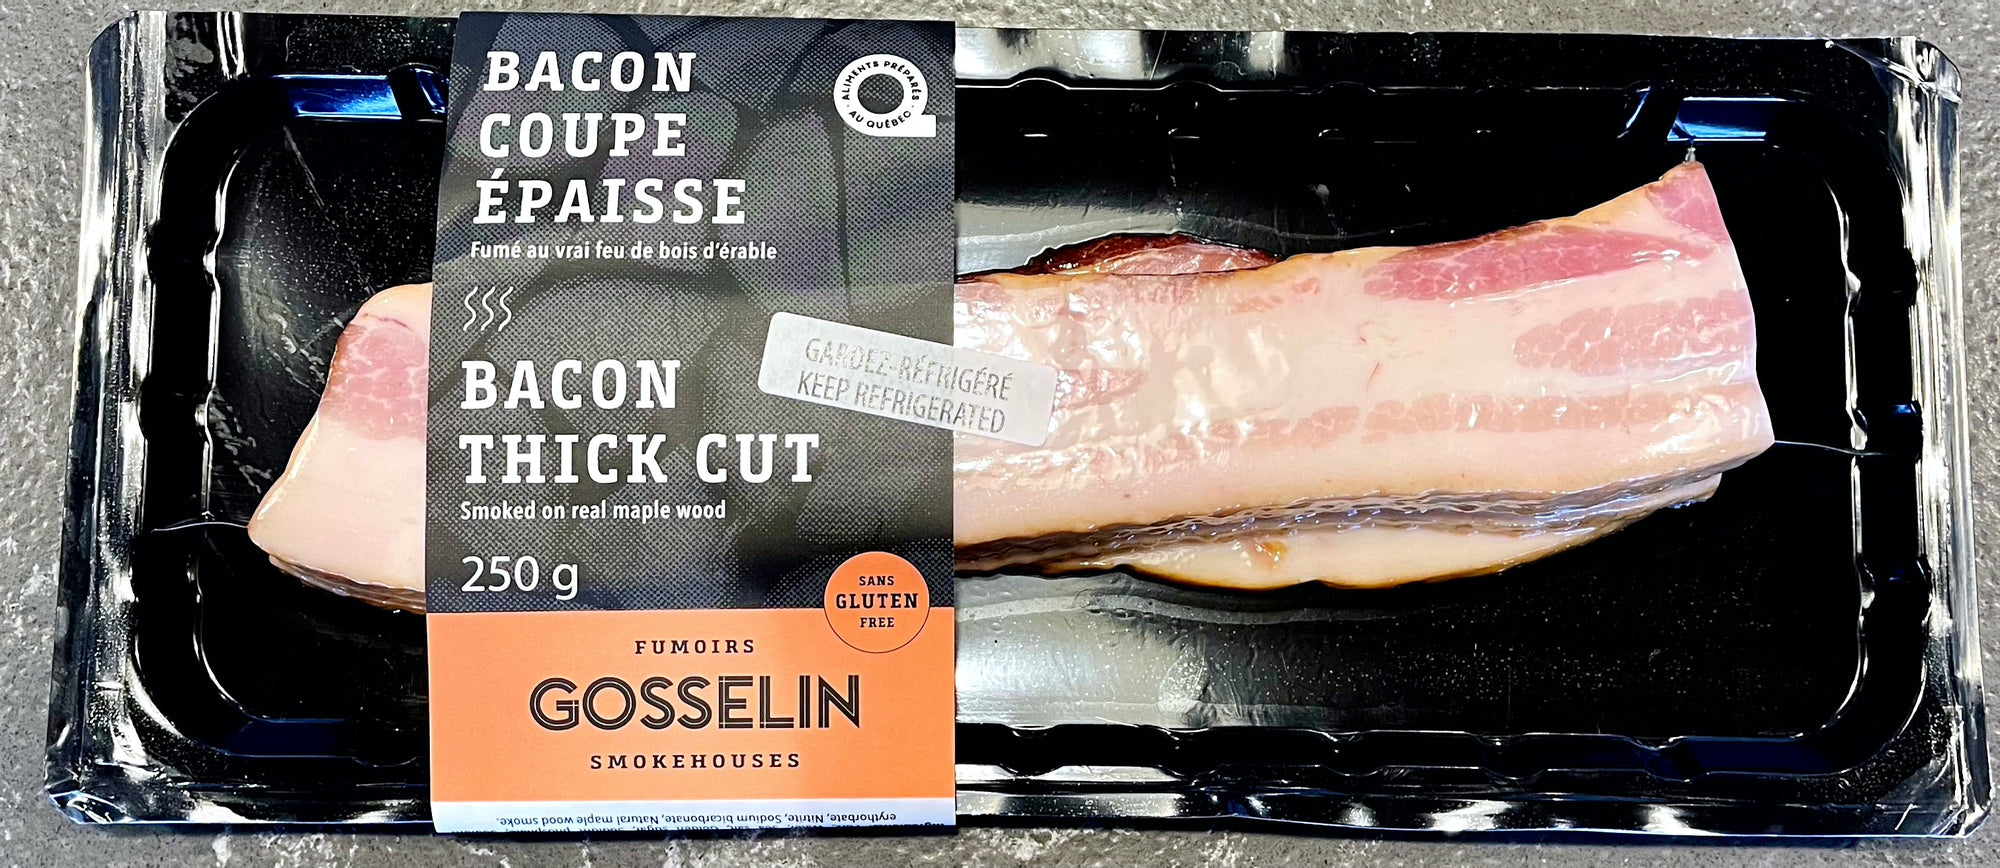 Bacon coupé épais fumé sur du vrai bois d'érable par Fumoirs Gosselin 250g (congelé)